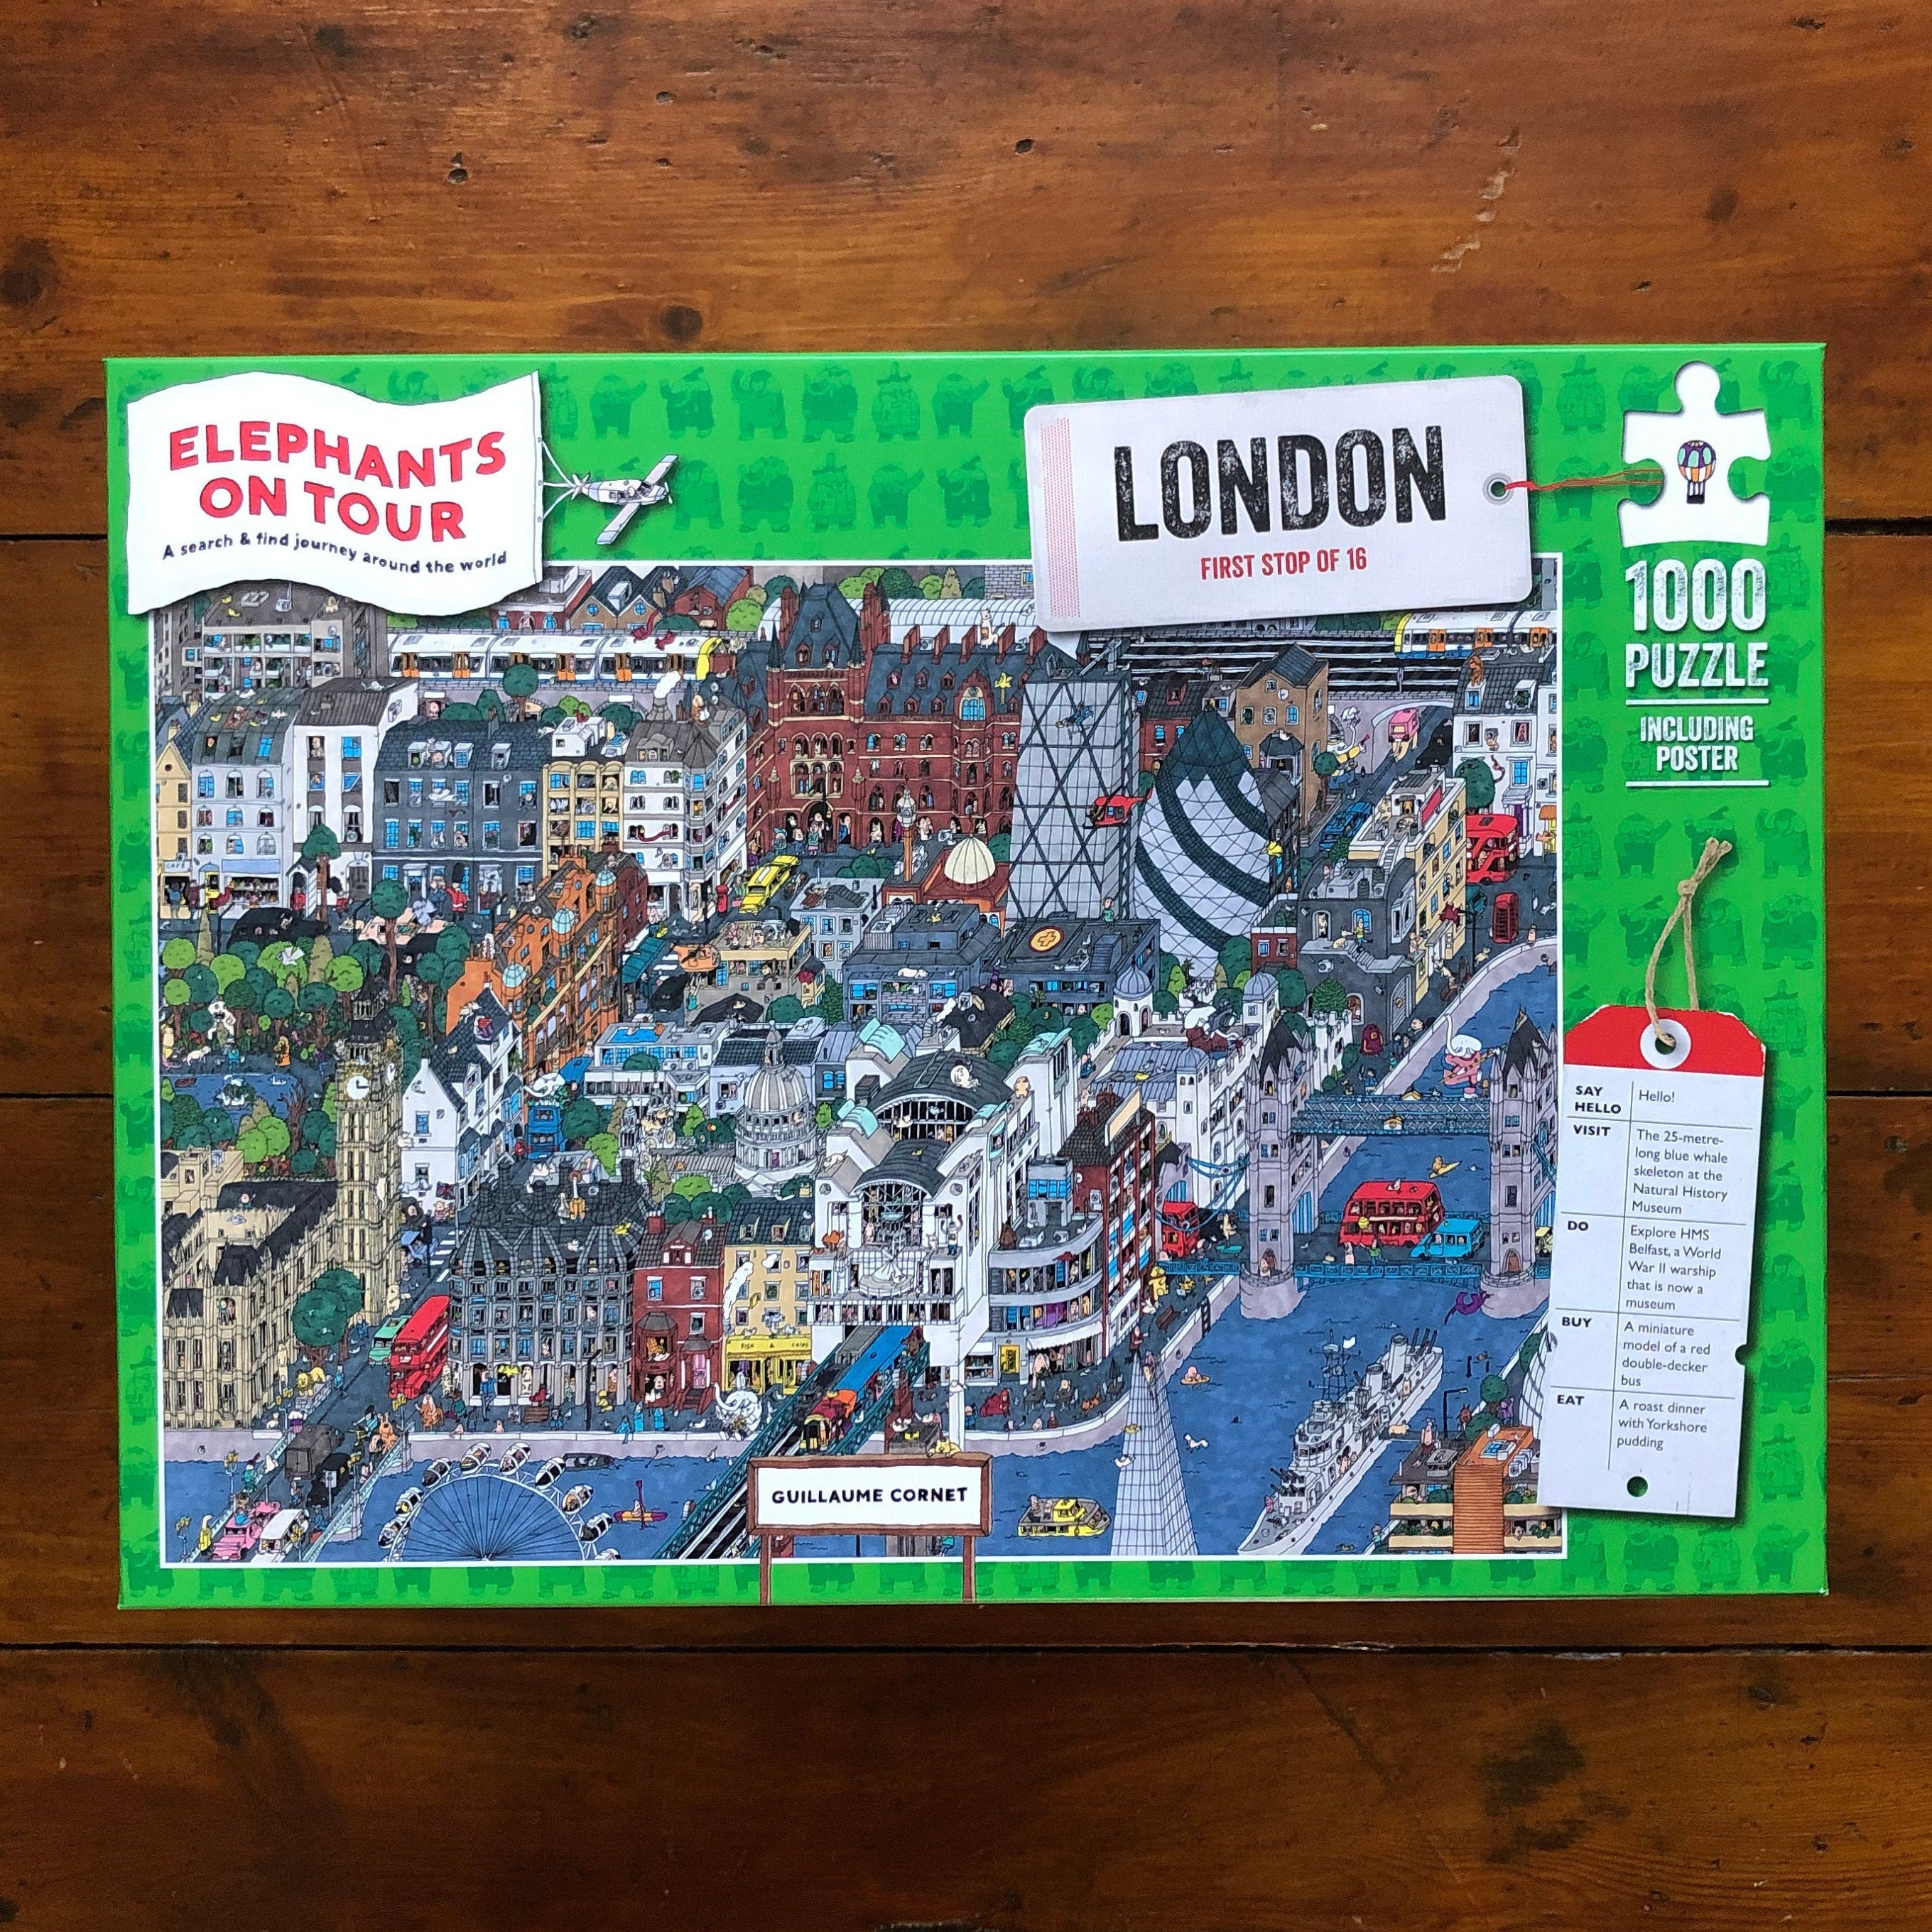 Ravensburger - Puzzles adultes - Puzzle 1000 pièces - Parliament Square,  Londres